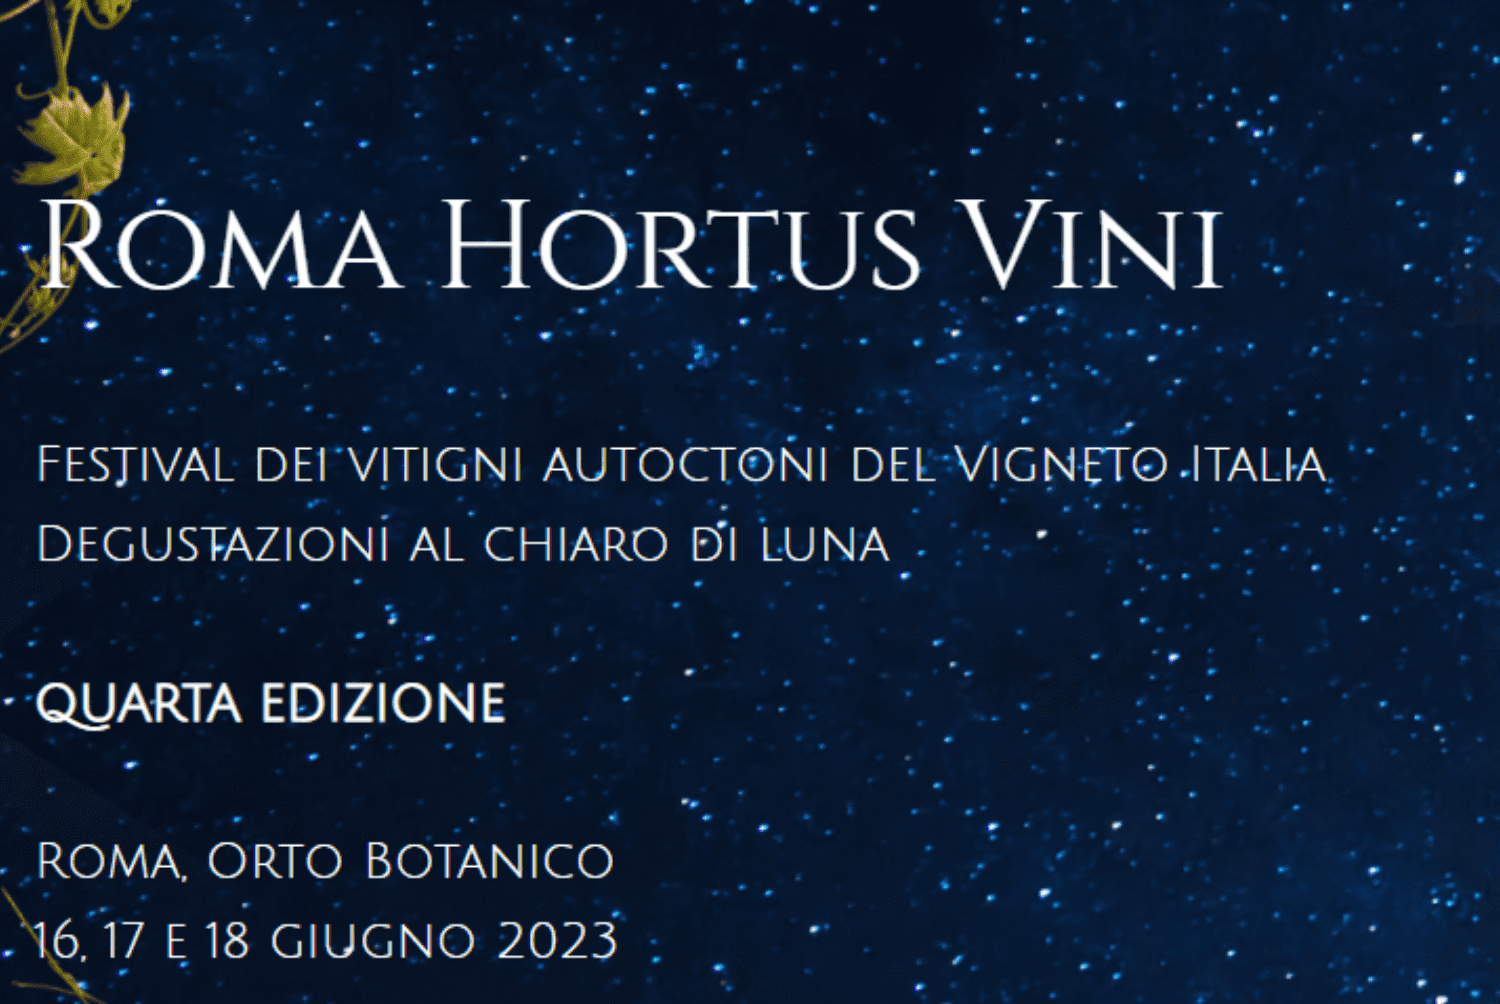 Roma Hortus vini 2023